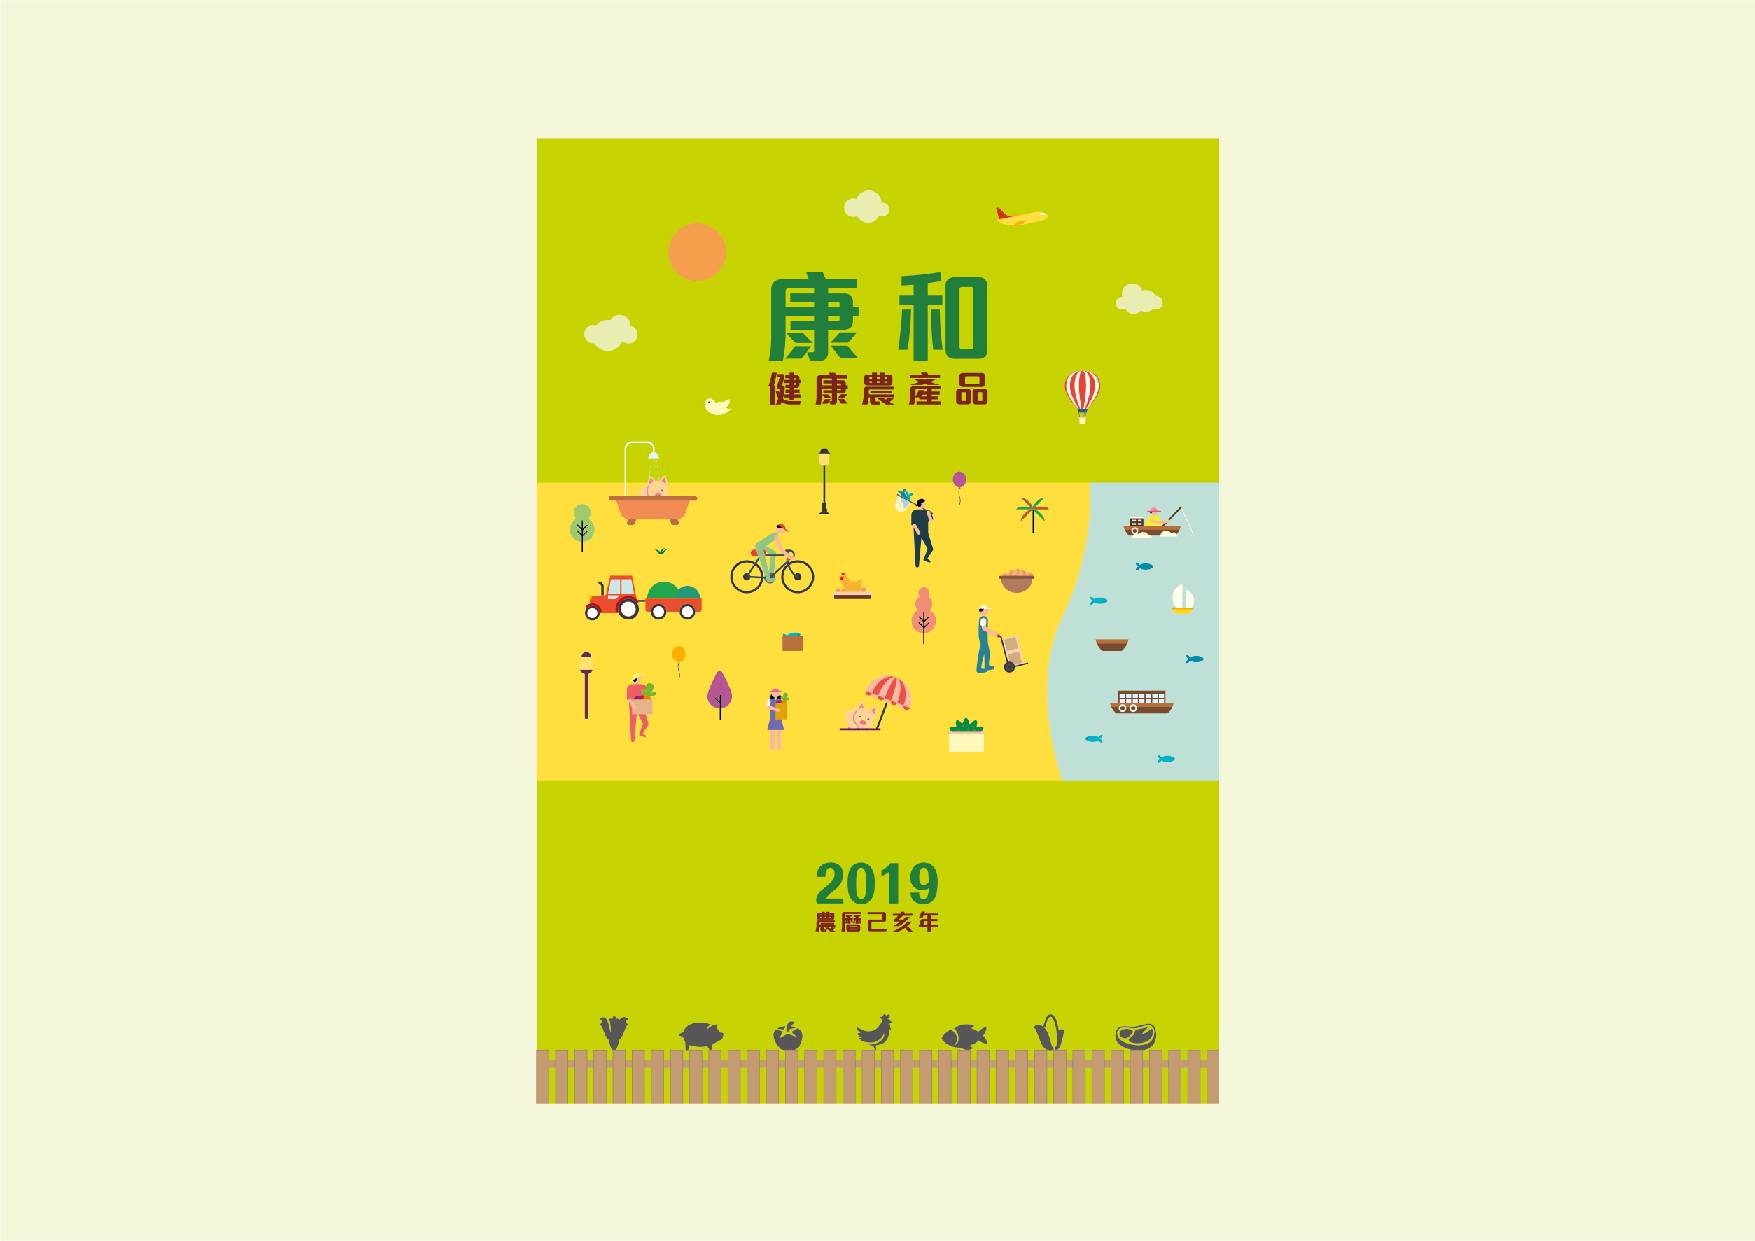 Ka Mei Chicken rebranding for calendar cover design